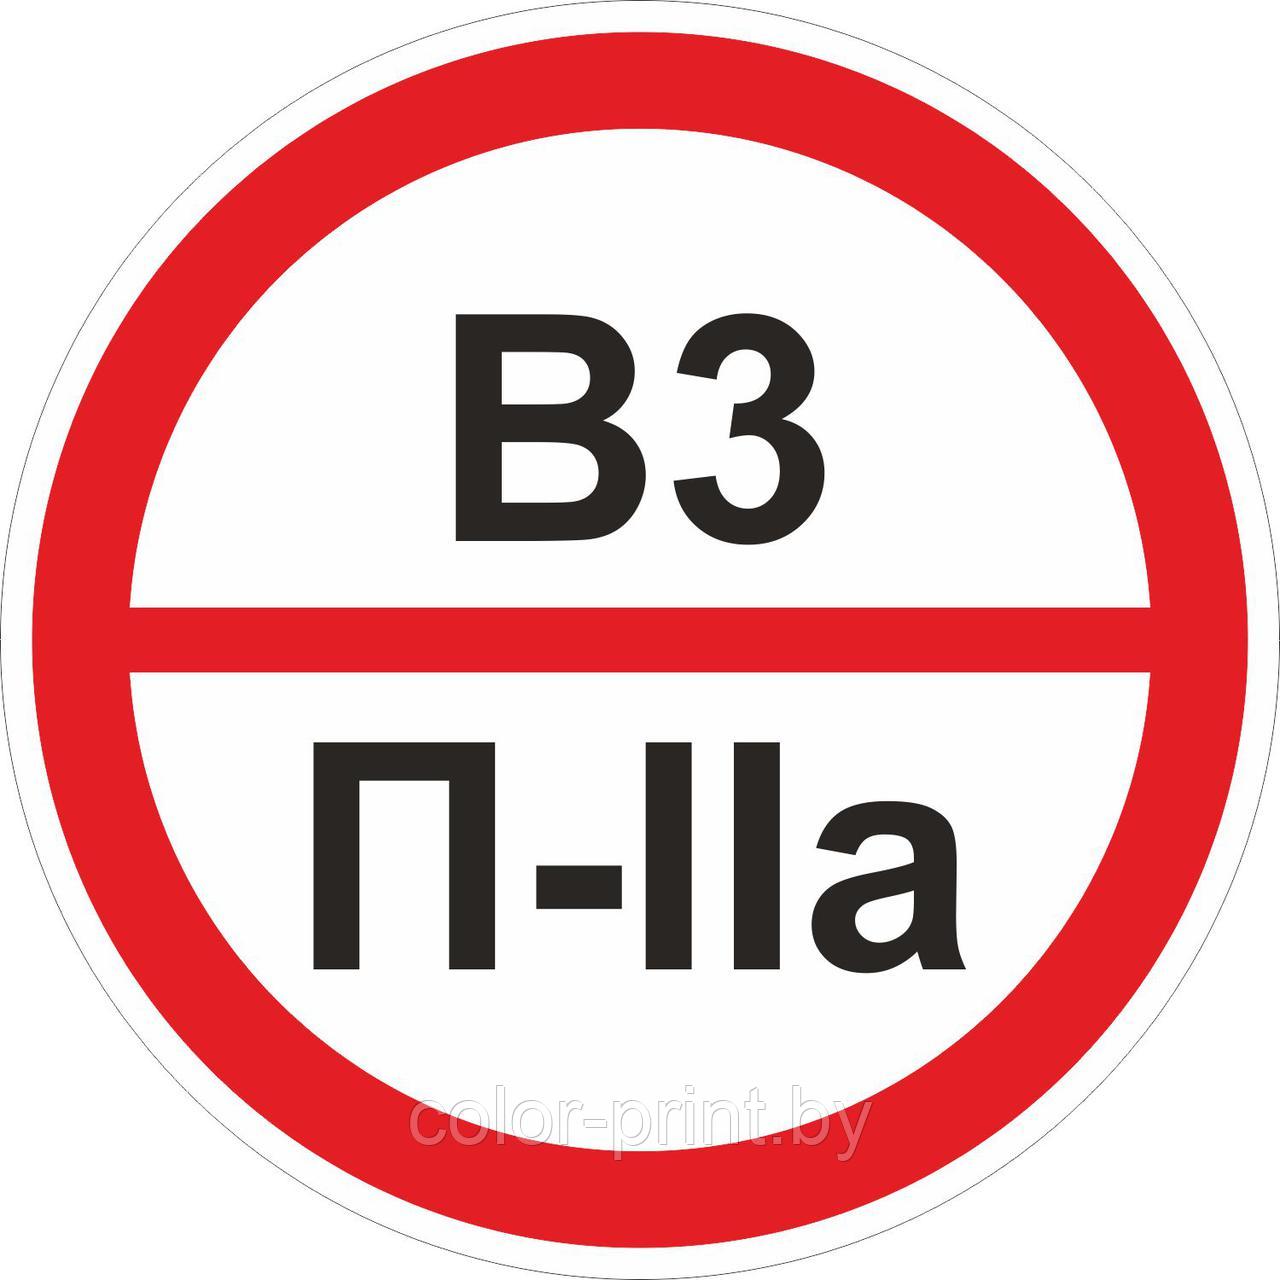 Наклейка ПВХ "Категорийности помещений В3/П-IIа"